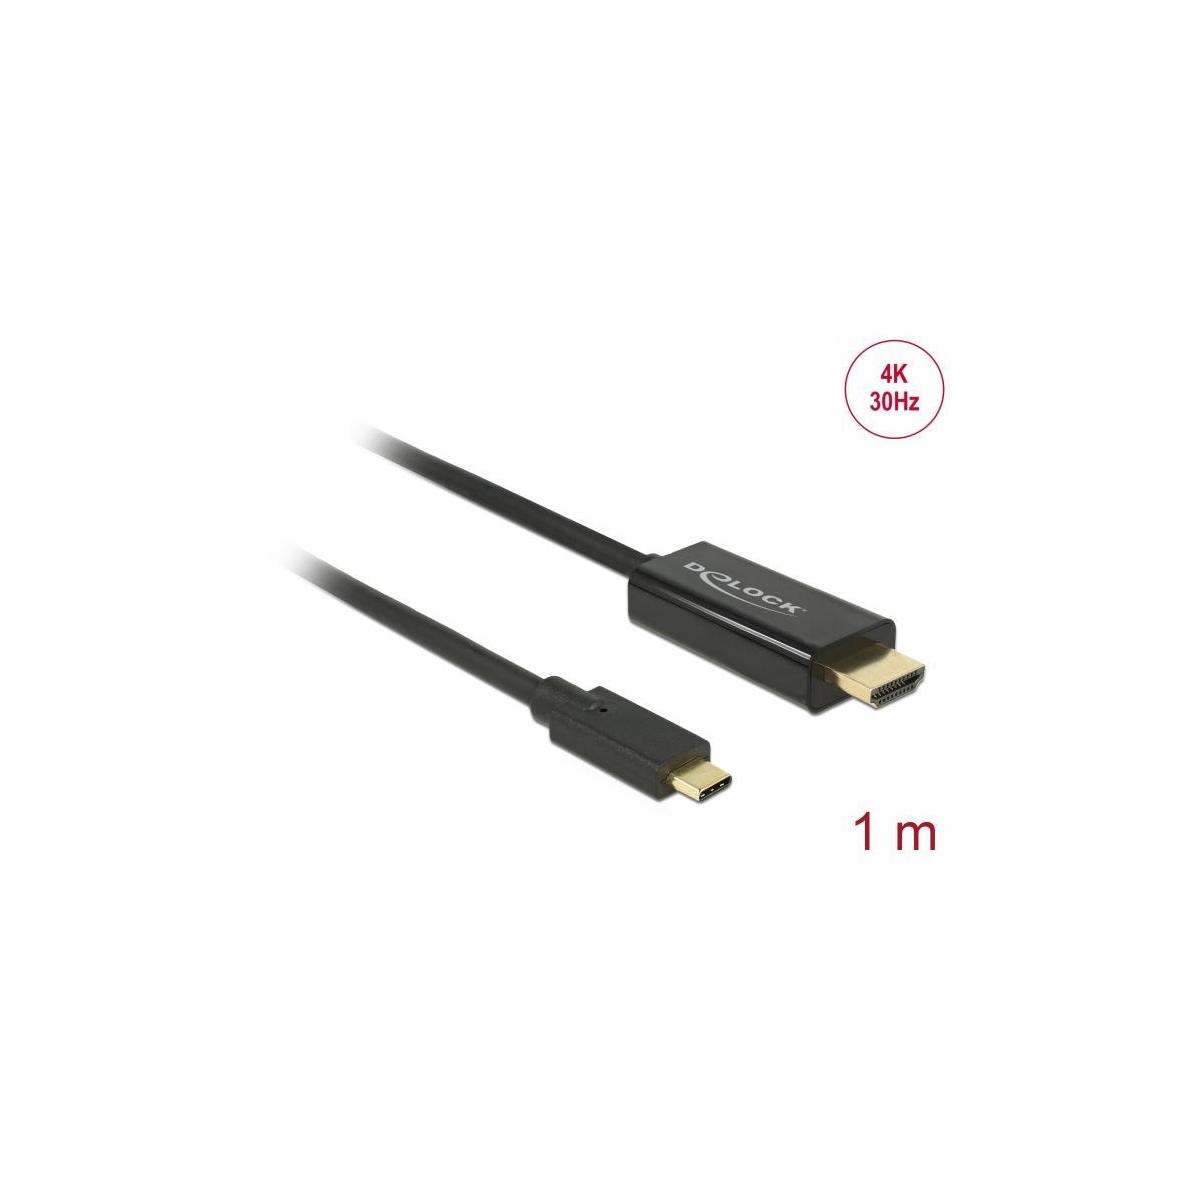 DELOCK DELOCK Kabel USB Type-C & 1 & Optionen & m Schwarz HDMI Display 30Hz TV Video, Zubehör, <gt/> Audio, 